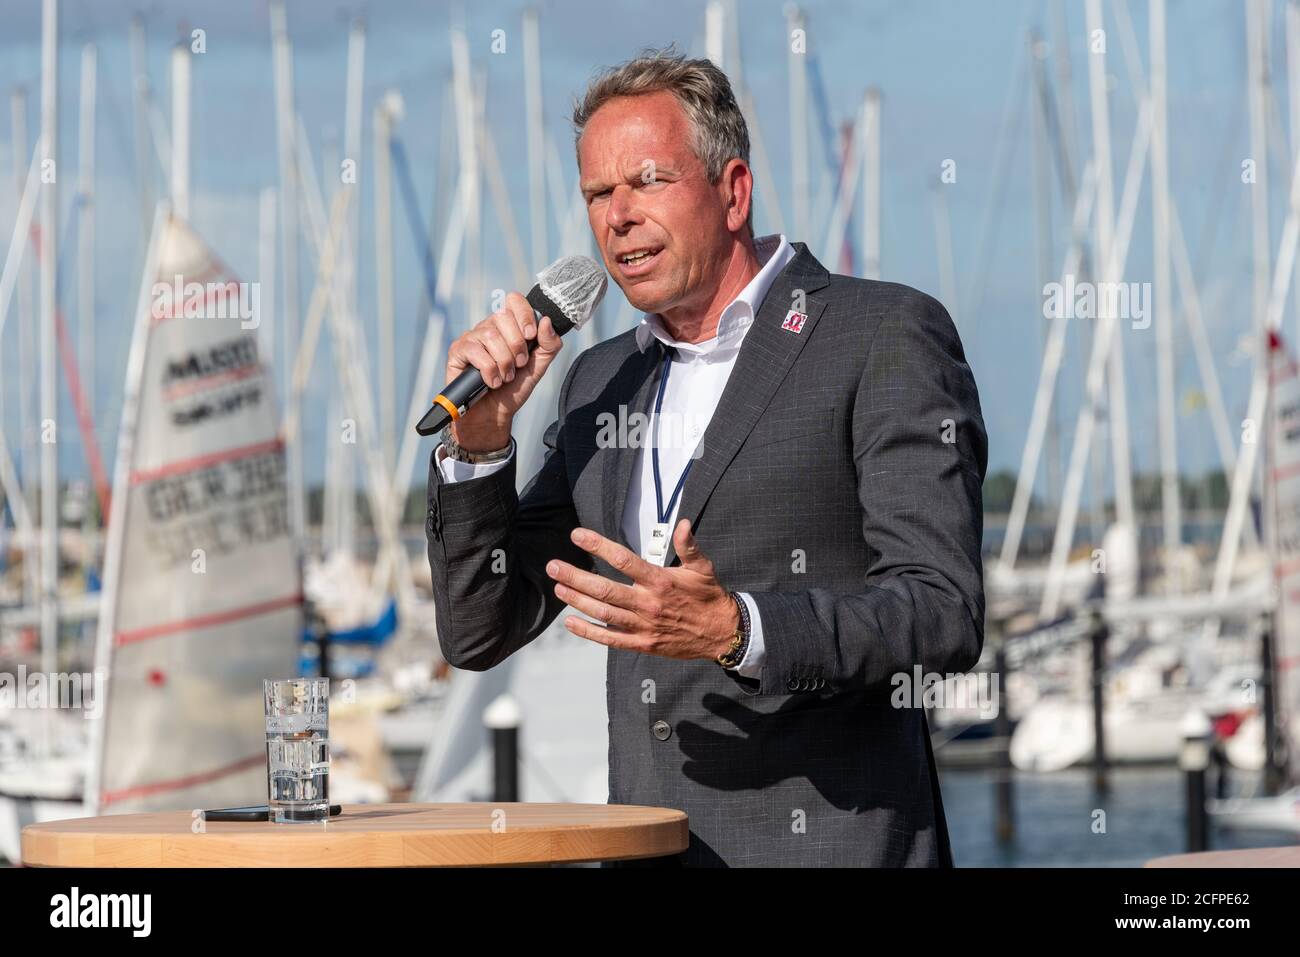 Die Eröffnung der Kieler Woche 2020 im Olympiahafen Kiel Schilksee durch den Ministerpräsidenten Daniel Günther und weitere prominente Personen Stock Photo